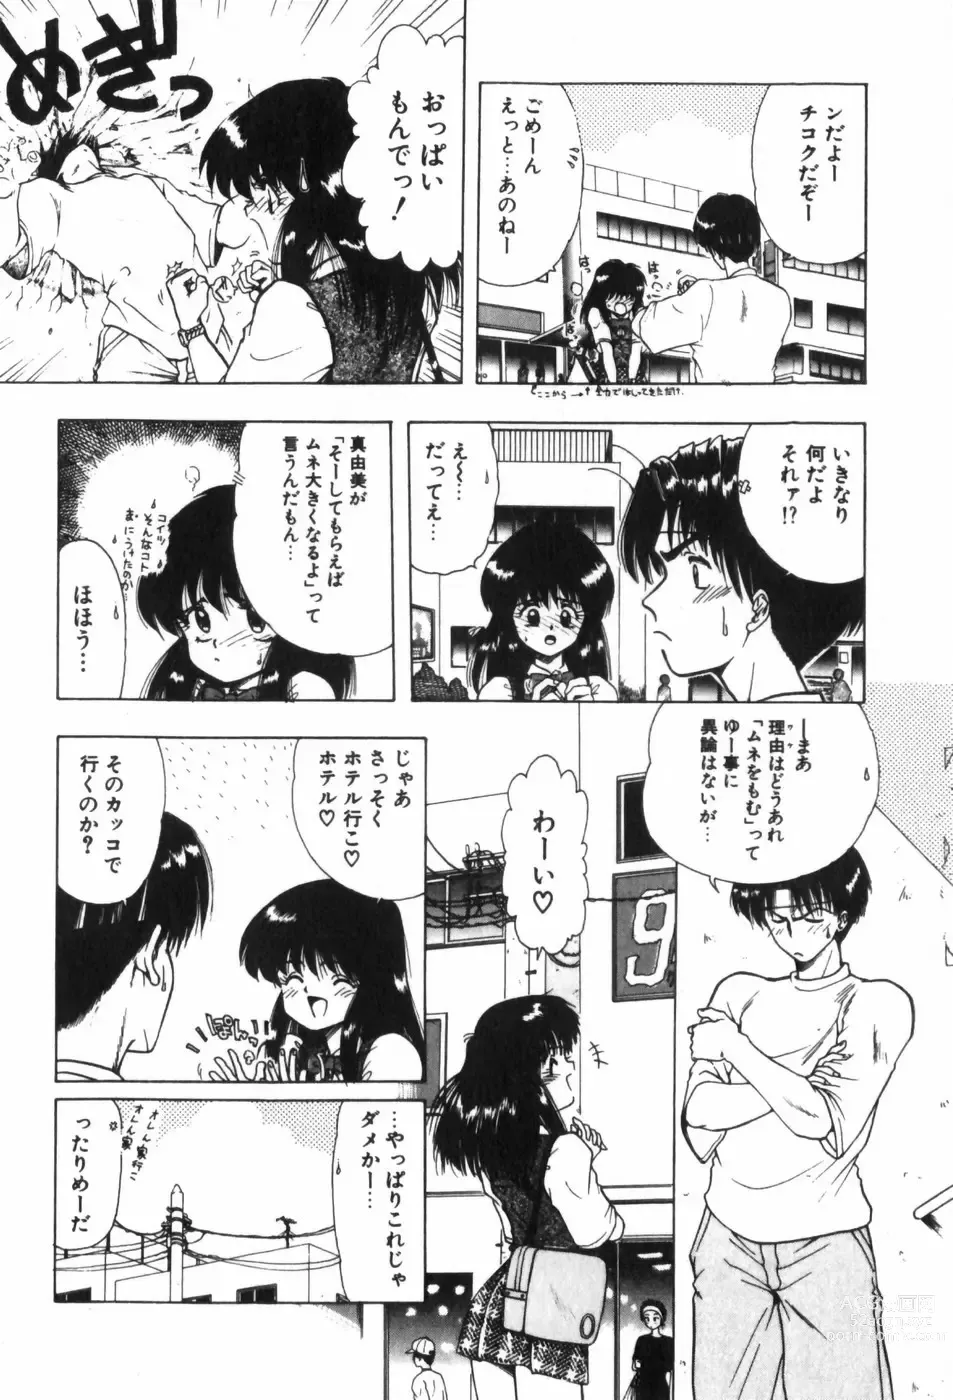 Page 16 of manga Funi Funi Hanjuku Musume